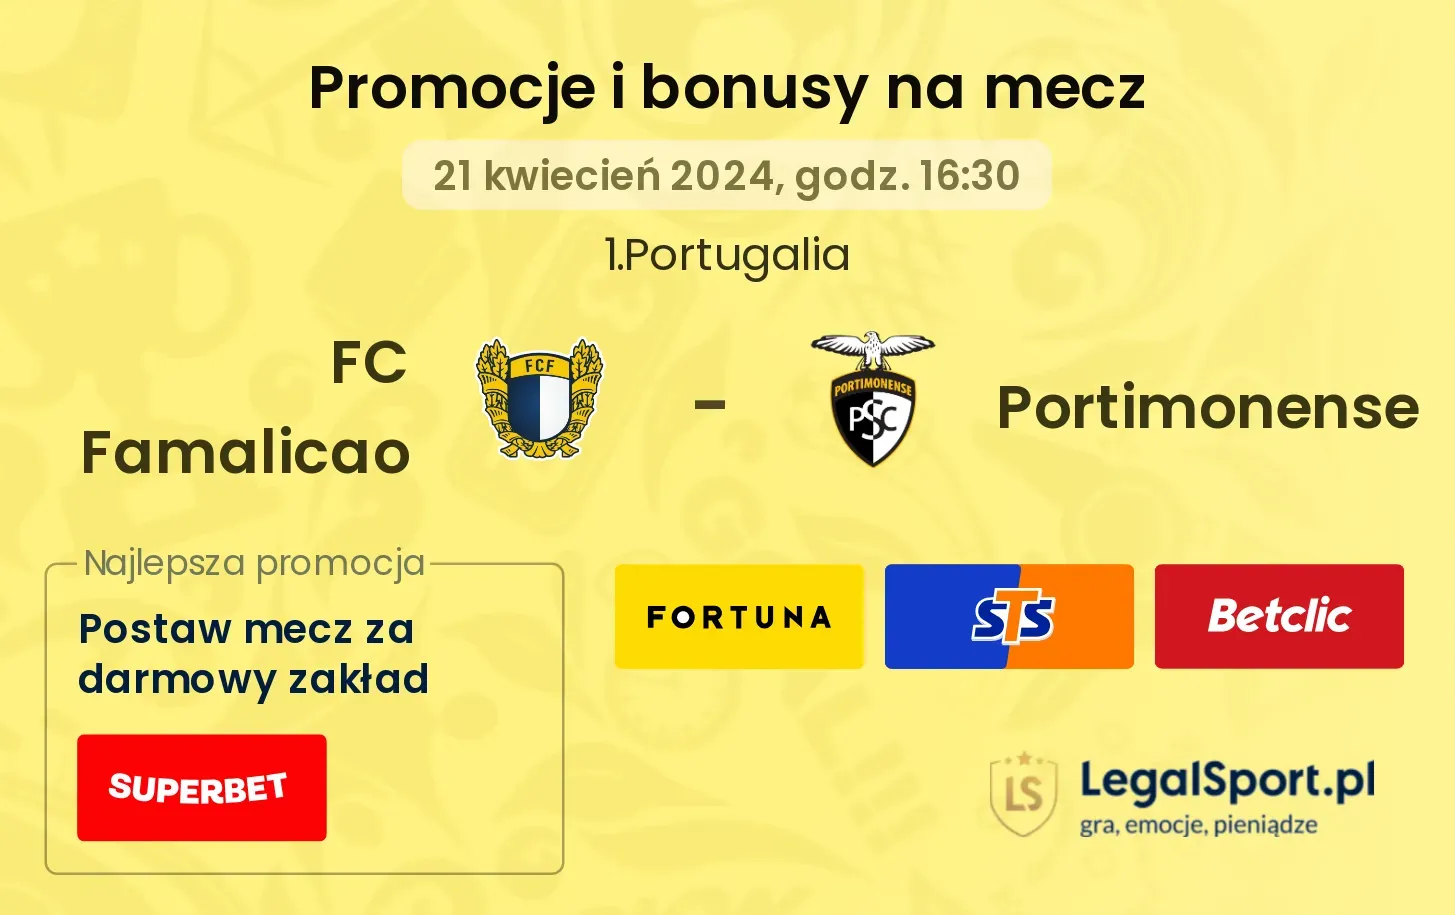 FC Famalicao - Portimonense promocje bonusy na mecz